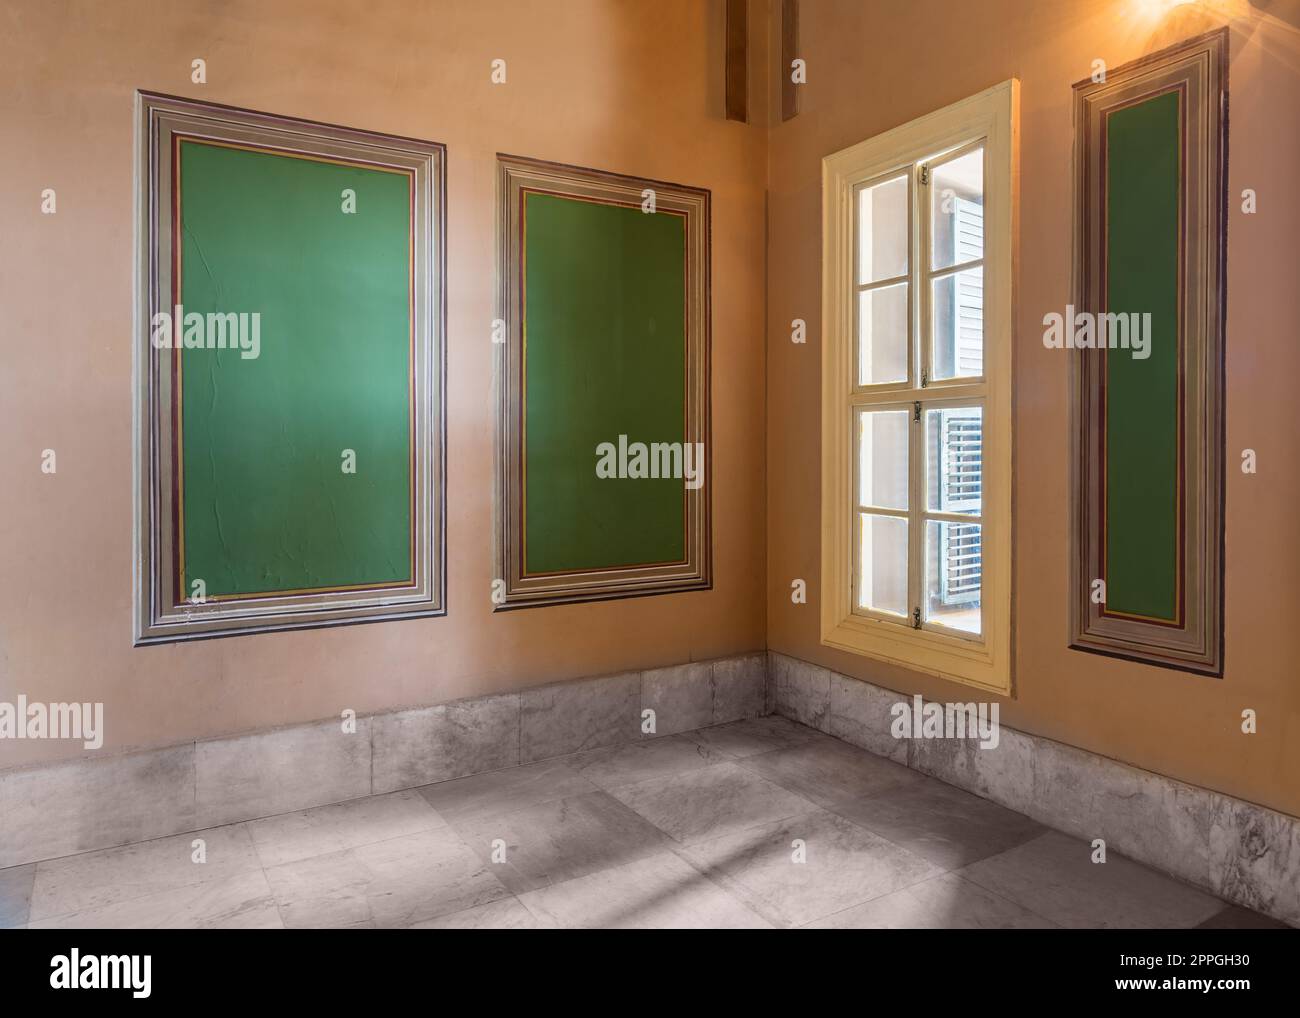 Drei grüne Rahmen mit kunstvoll verziertem Rand und Fenster mit grünem Rollladen an orangefarbenen Wänden mit Marmorboden Stockfoto